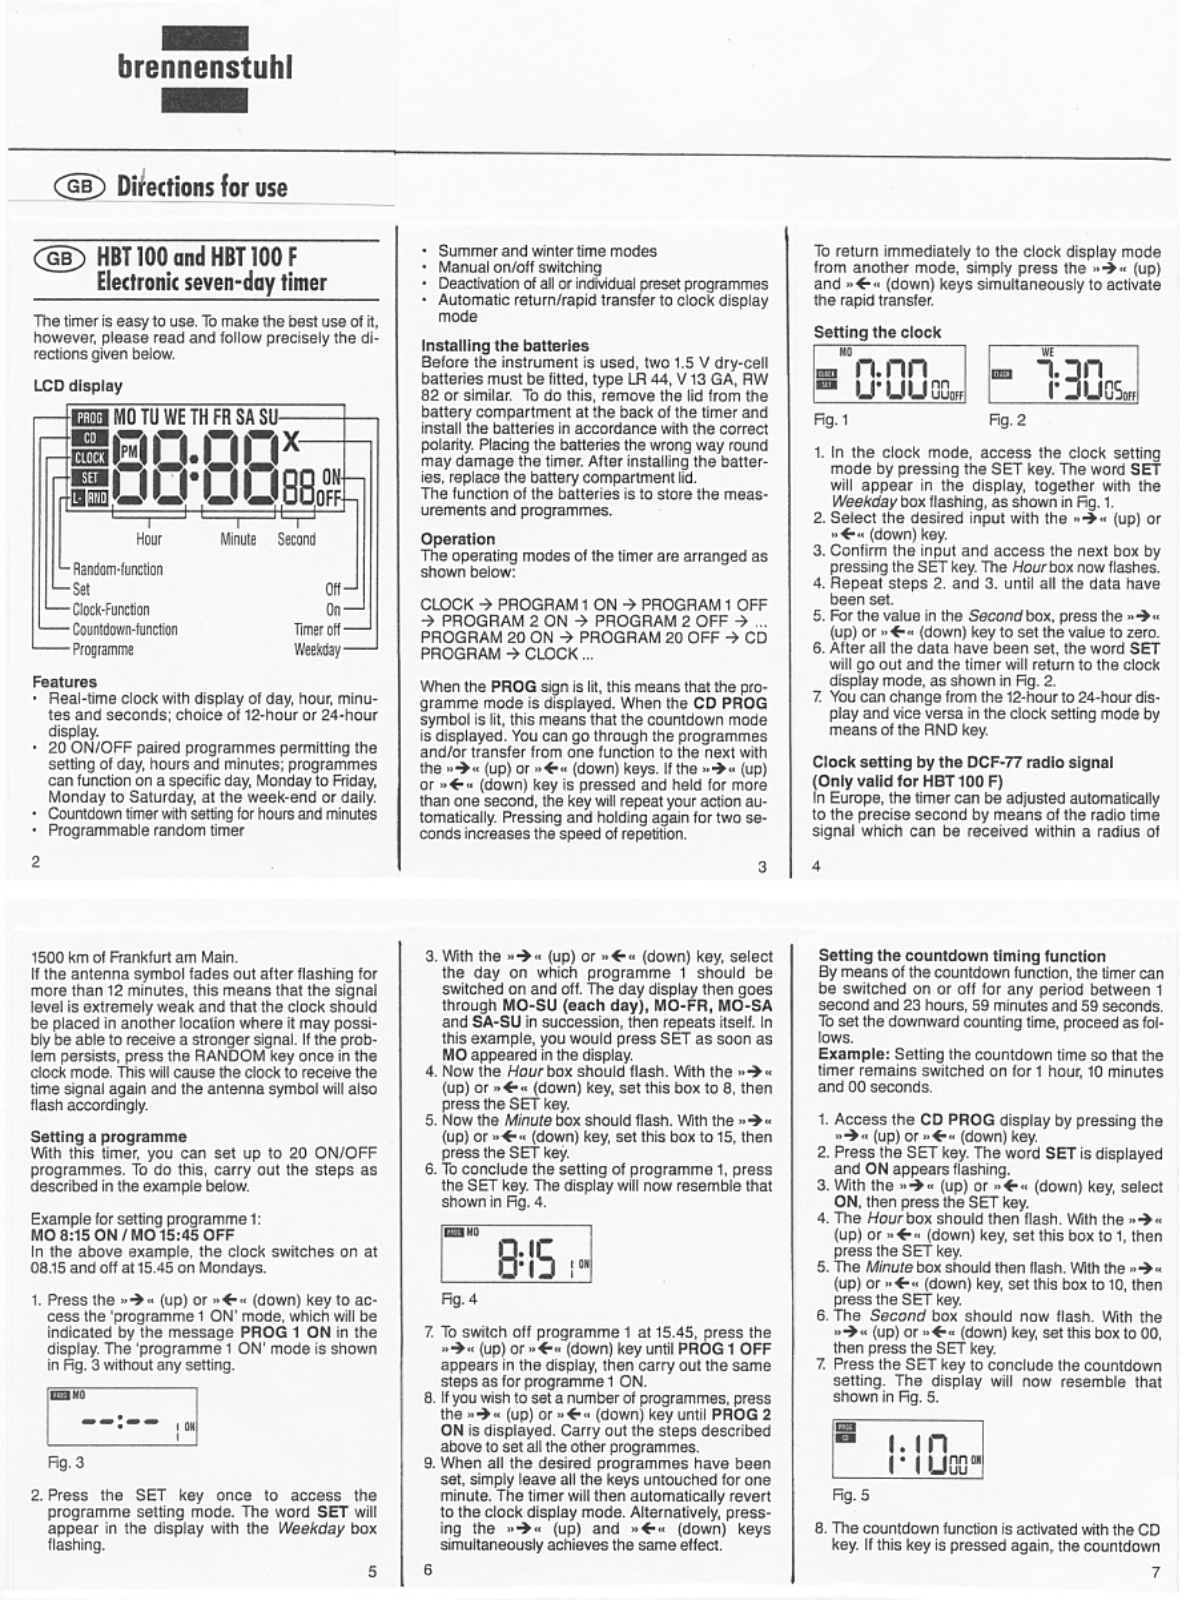 Brennenstuhl HBT 100 F, HBT 100 Manual